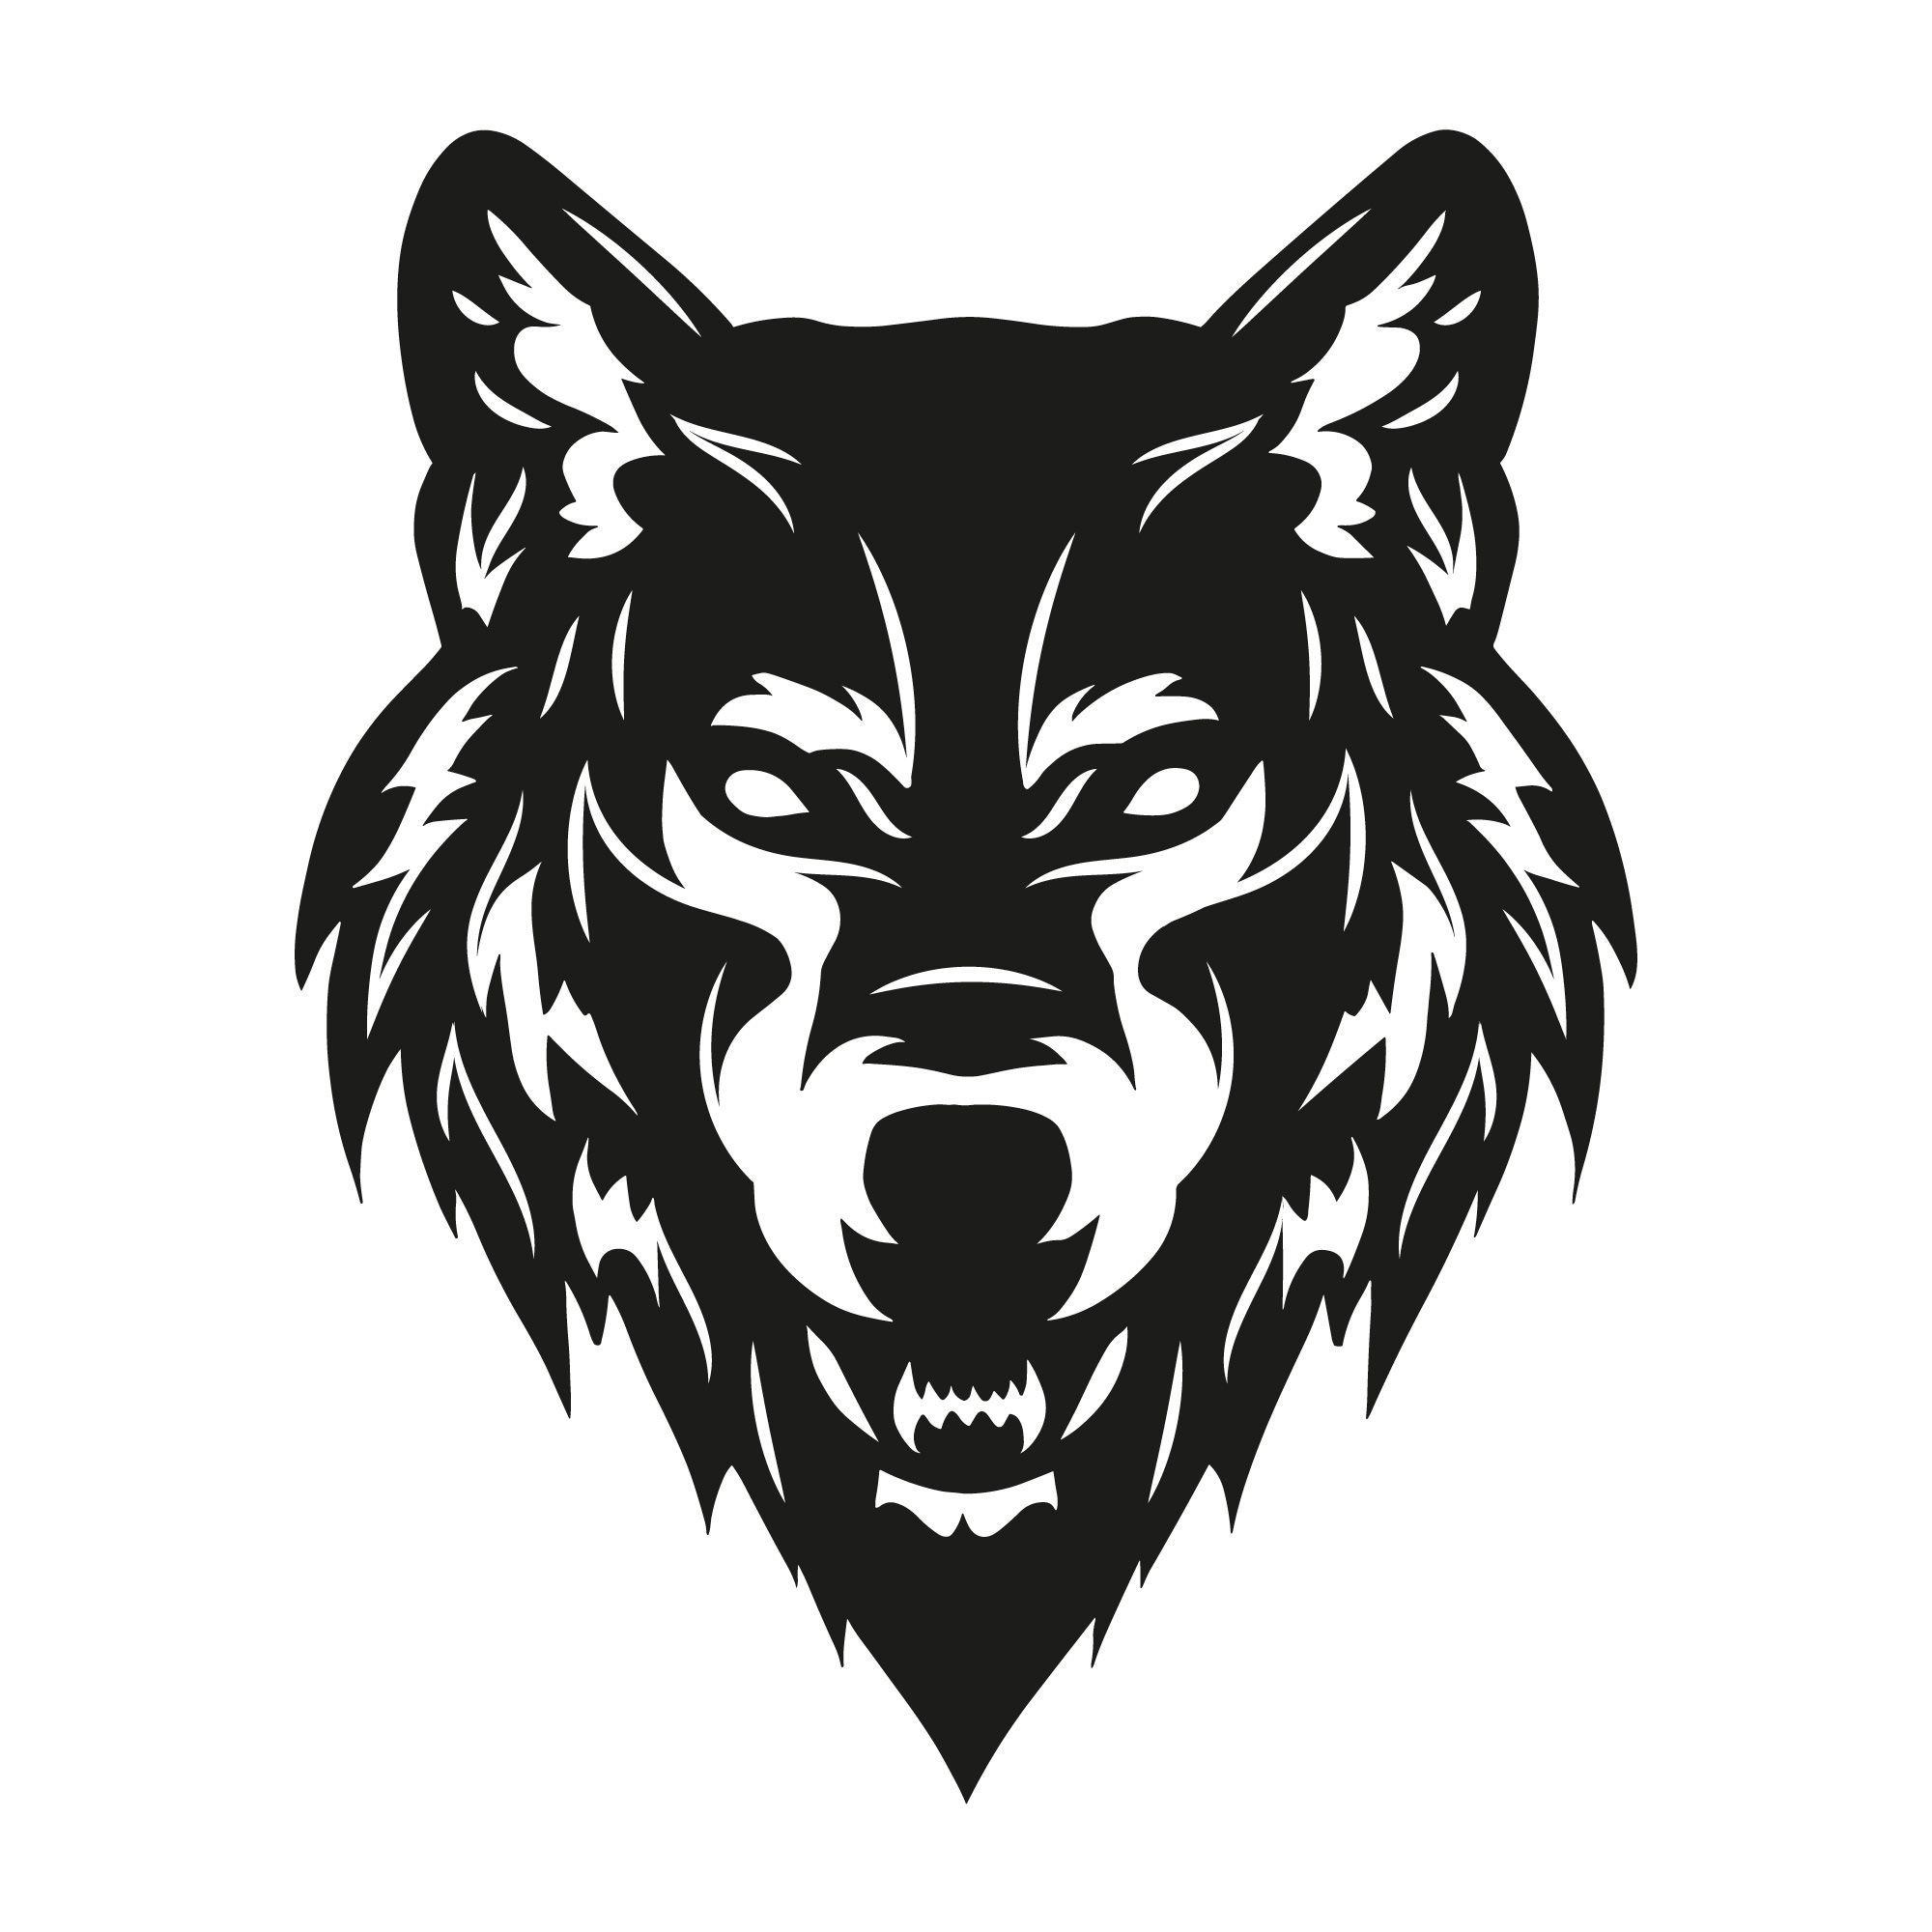 Player wolfThron avatar